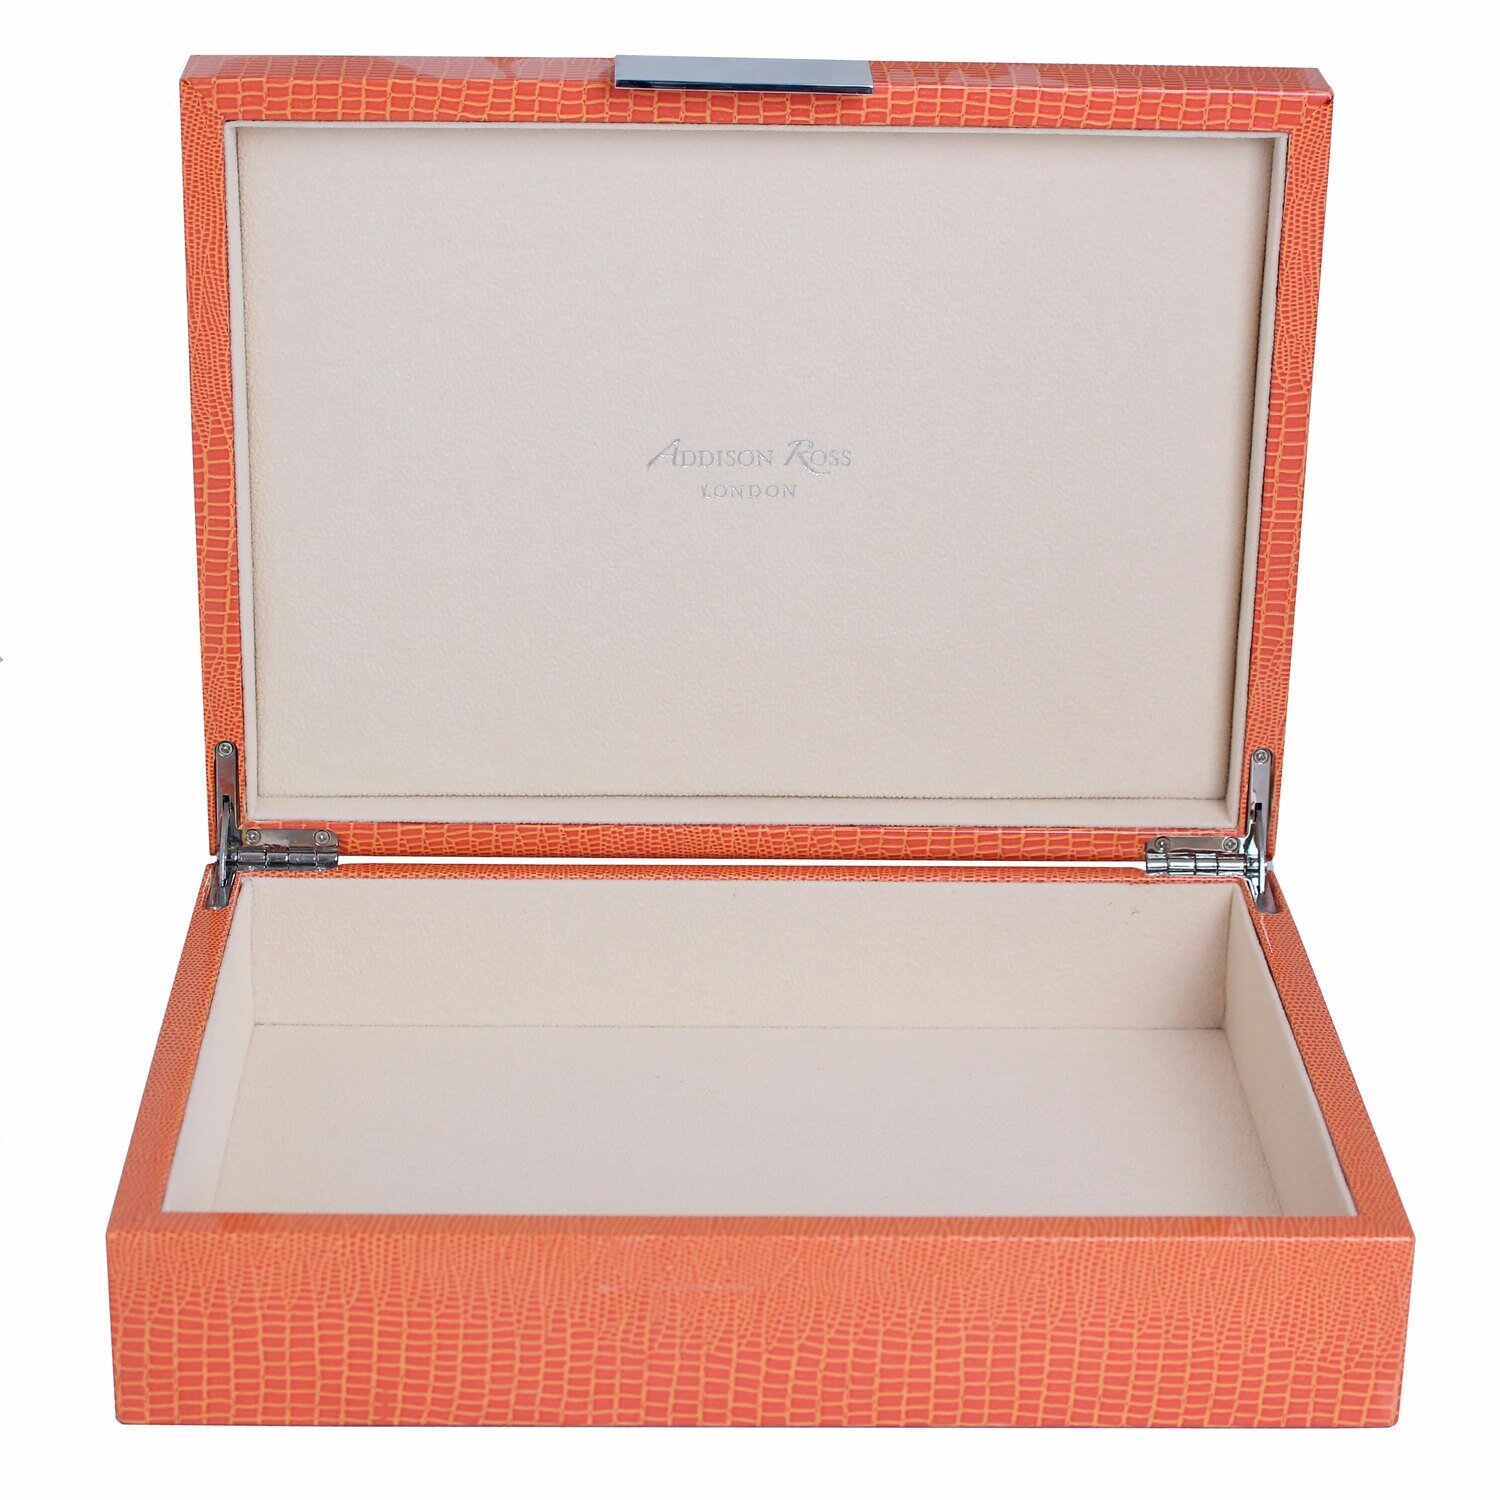 Addison Ross Orange Crocodile Storage Box8 x 11 Inch Lacquer BX1561